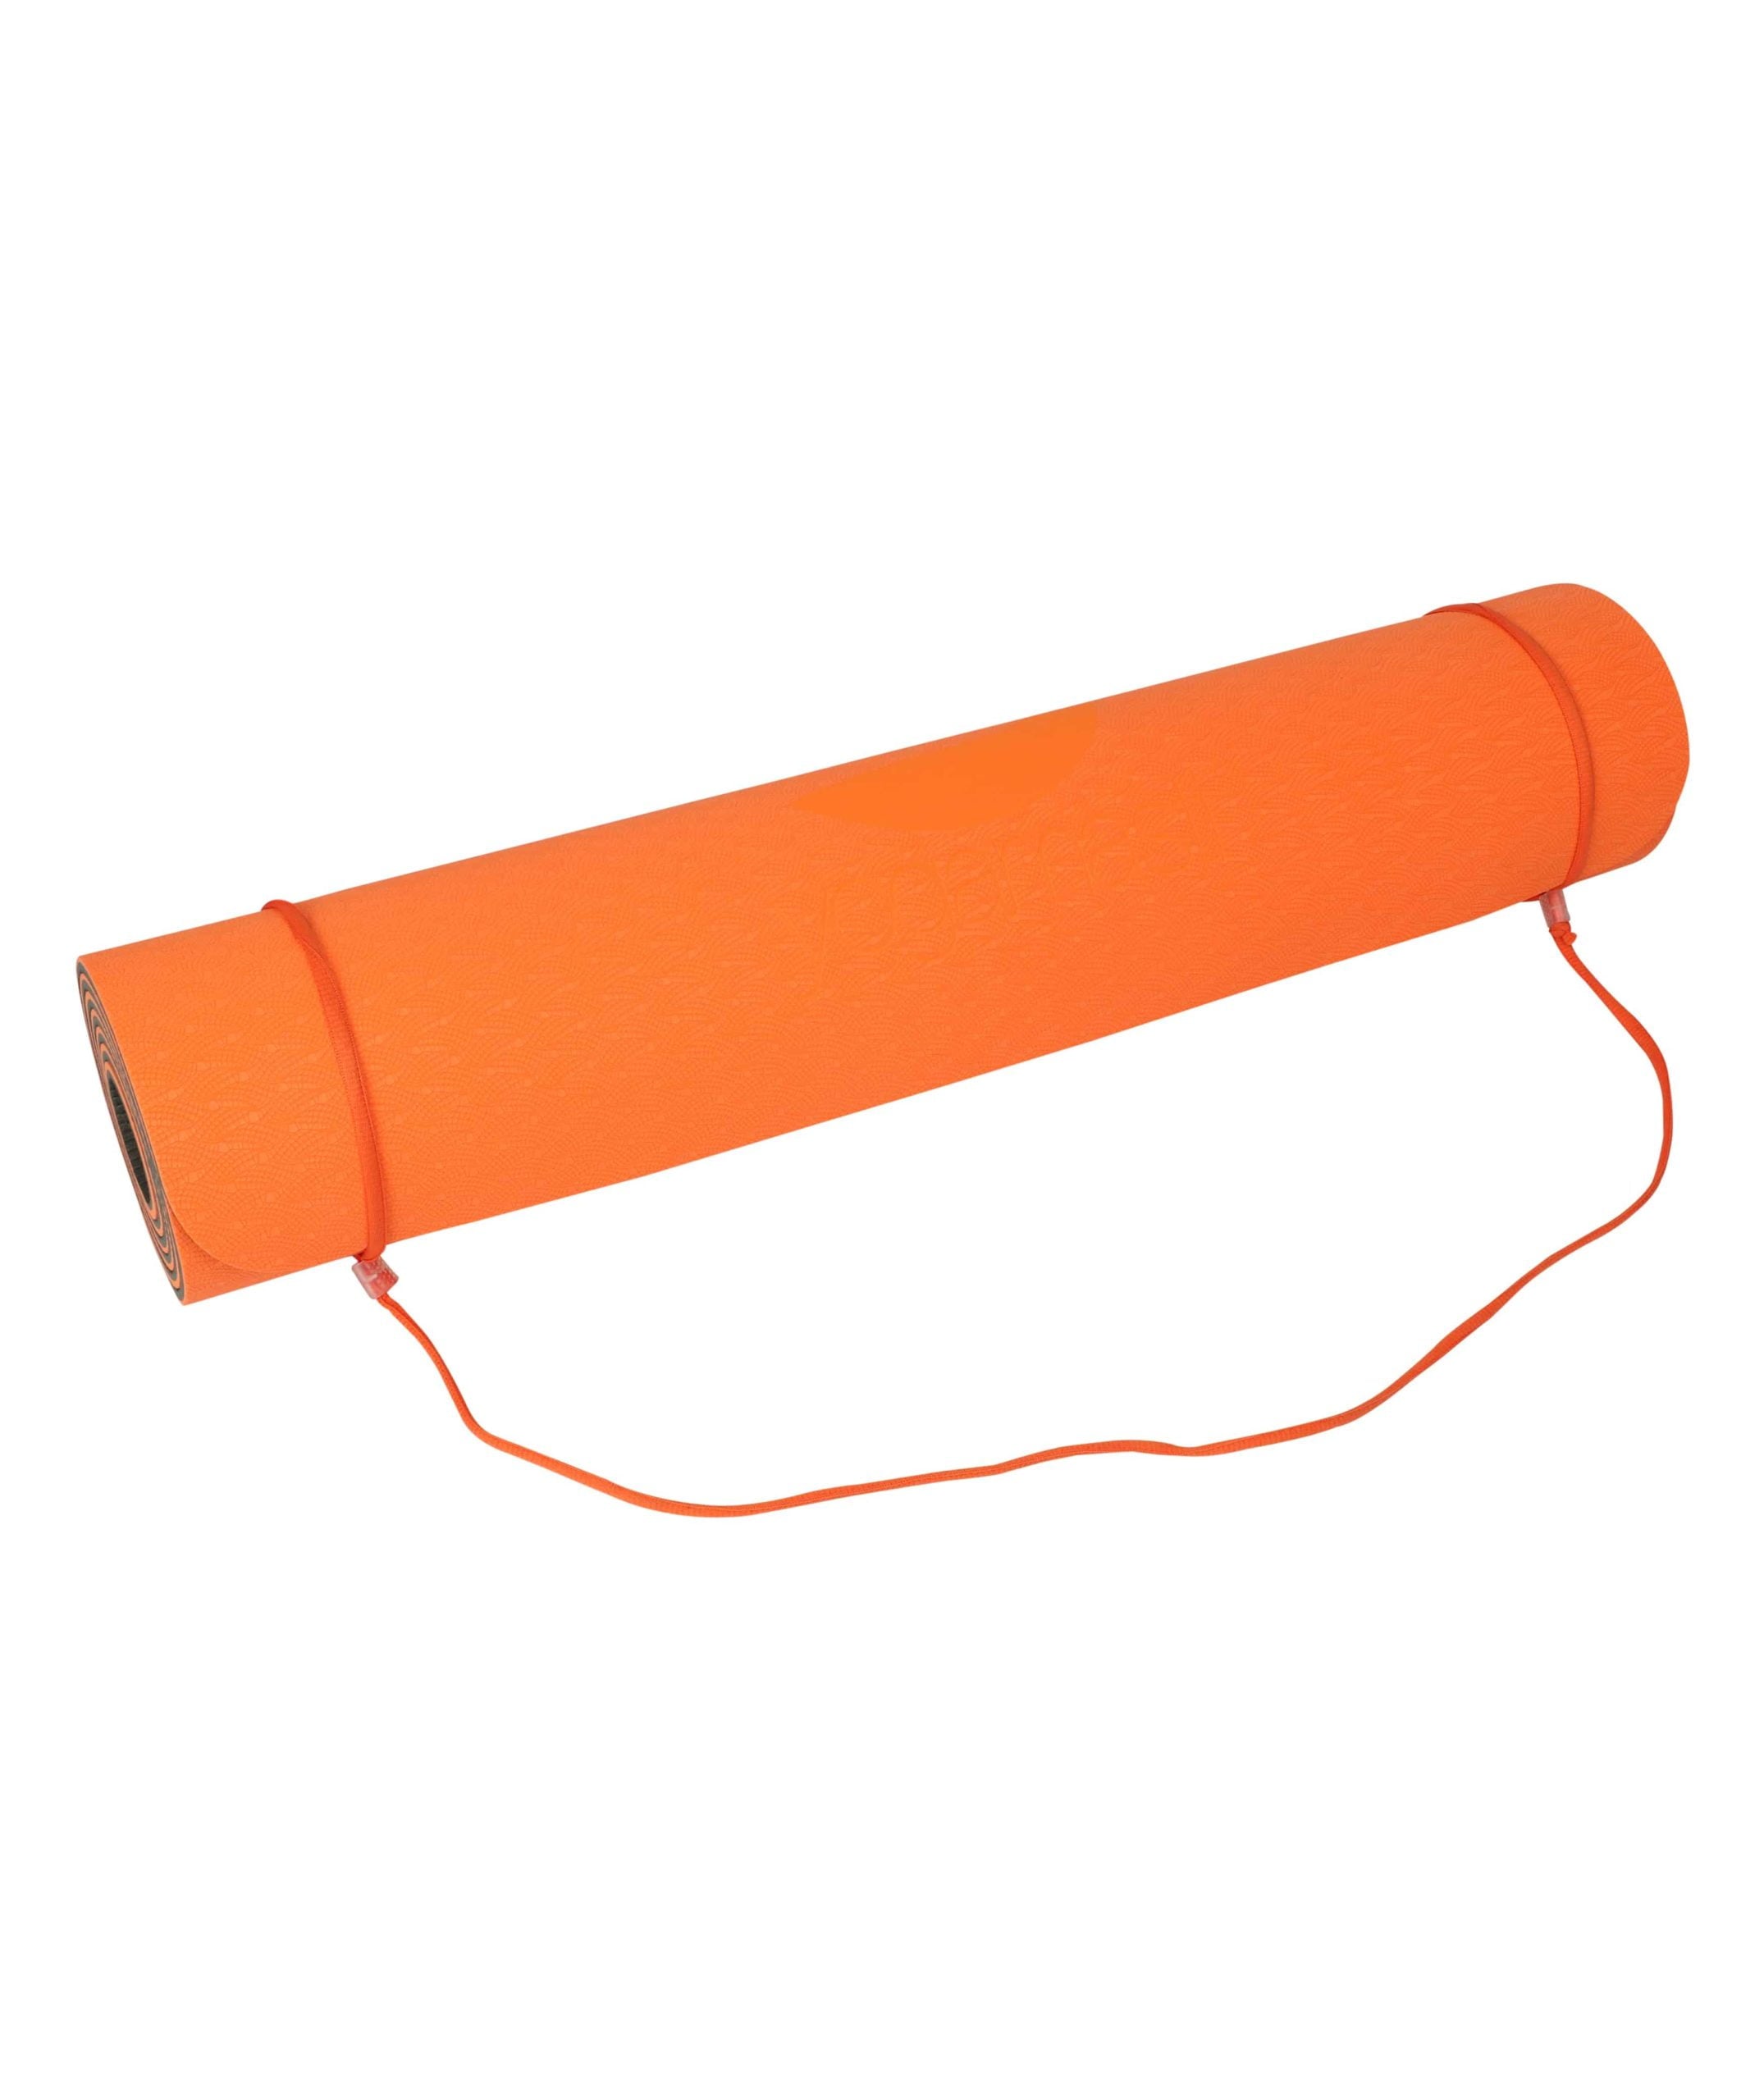 Yogamasti Practice Sticky Yoga Mat 6mm - Orange/Olive